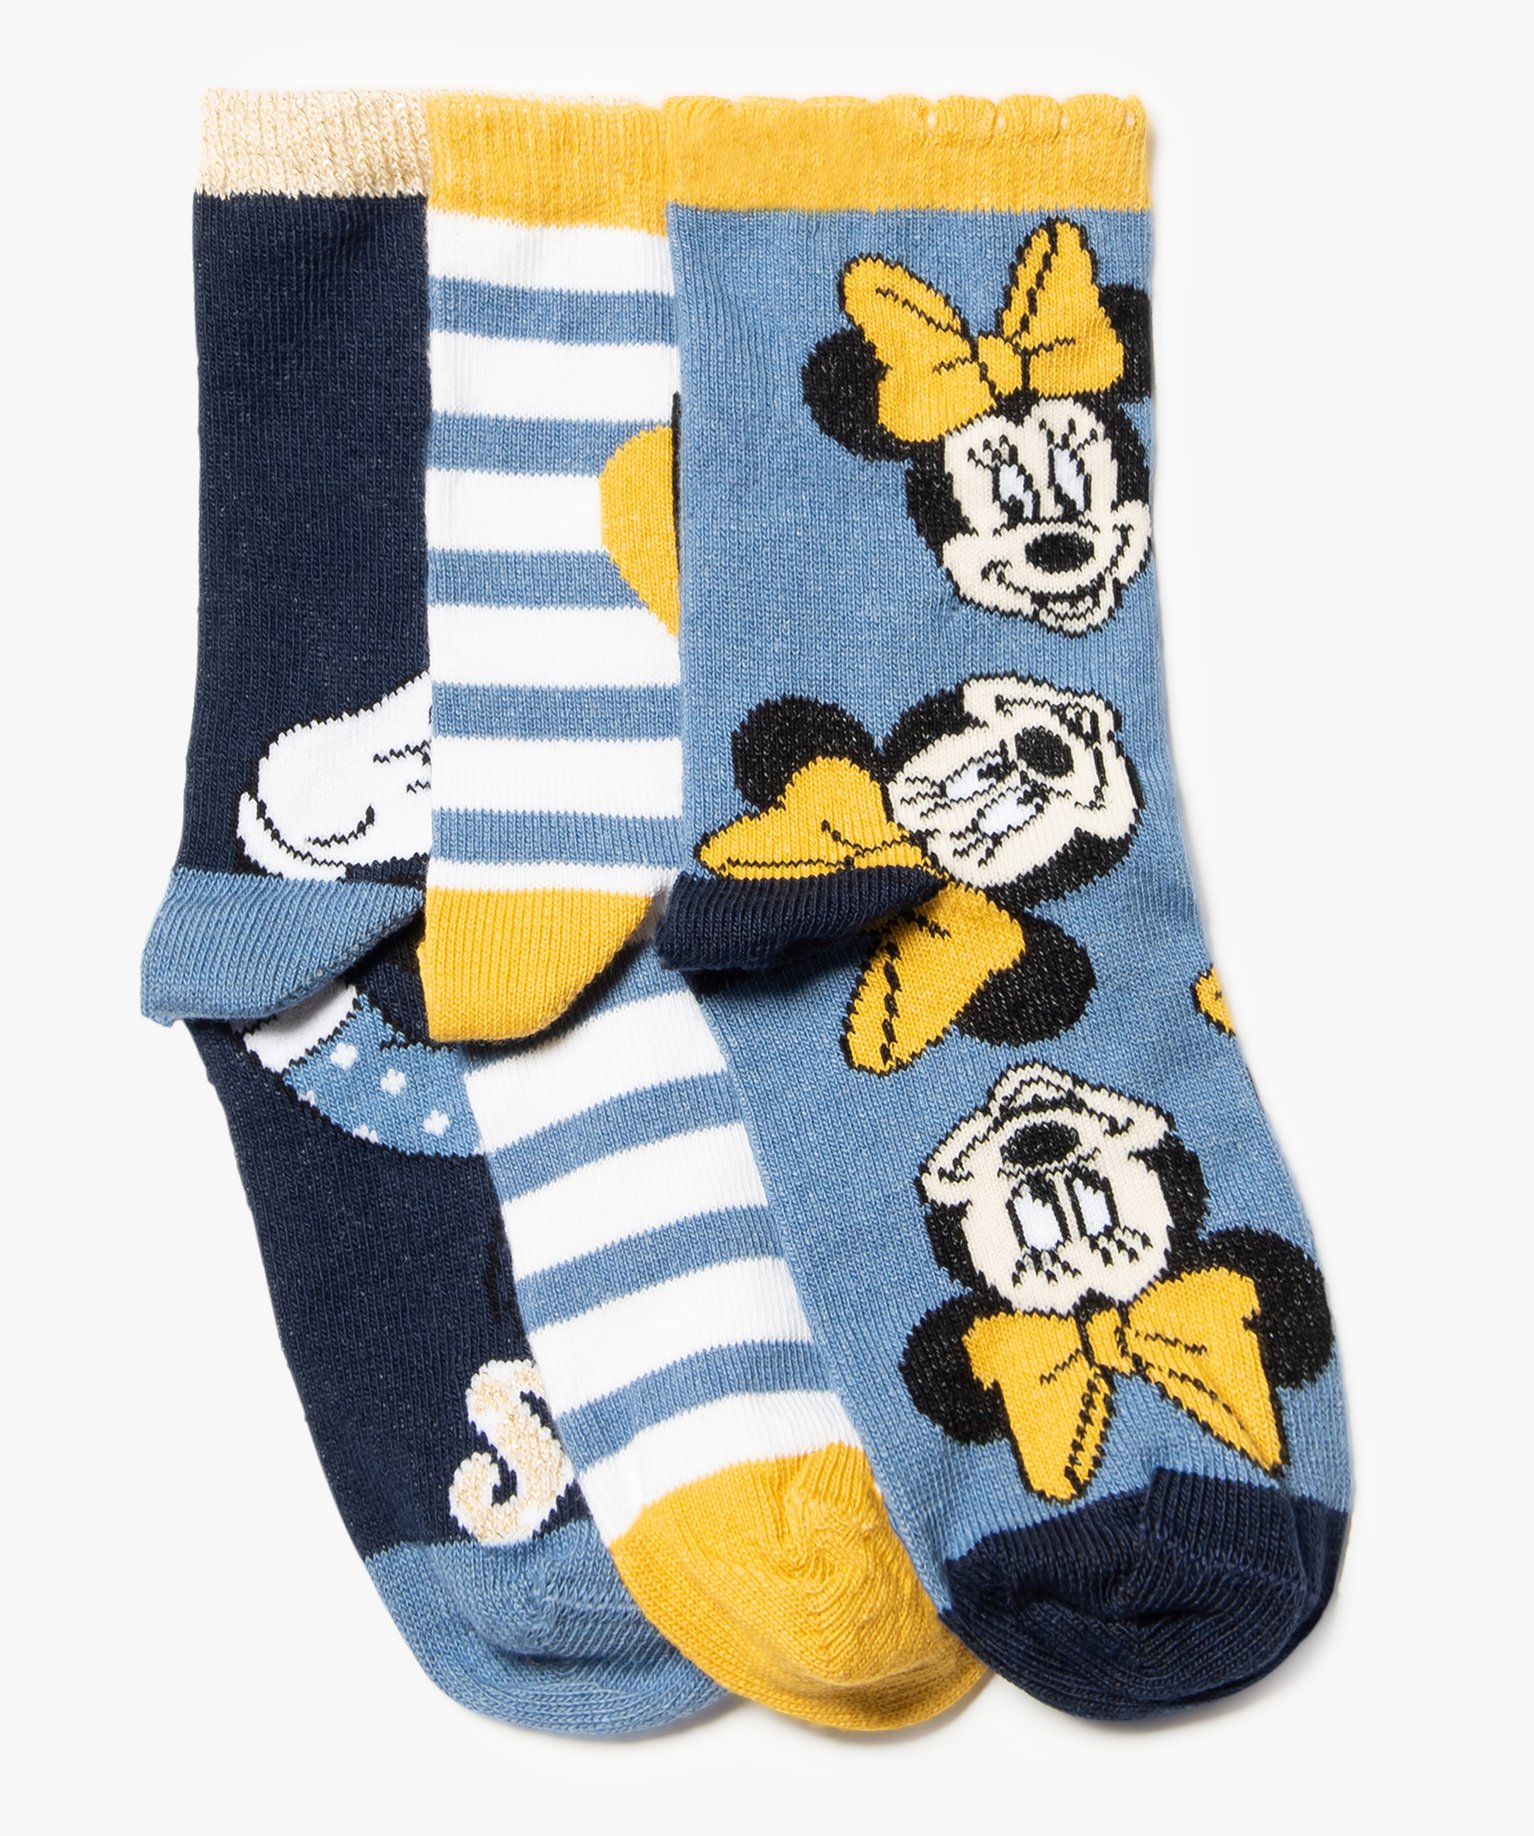 Chaussettes fille à motifs Minnie Mousse (lot de 3) - Disney